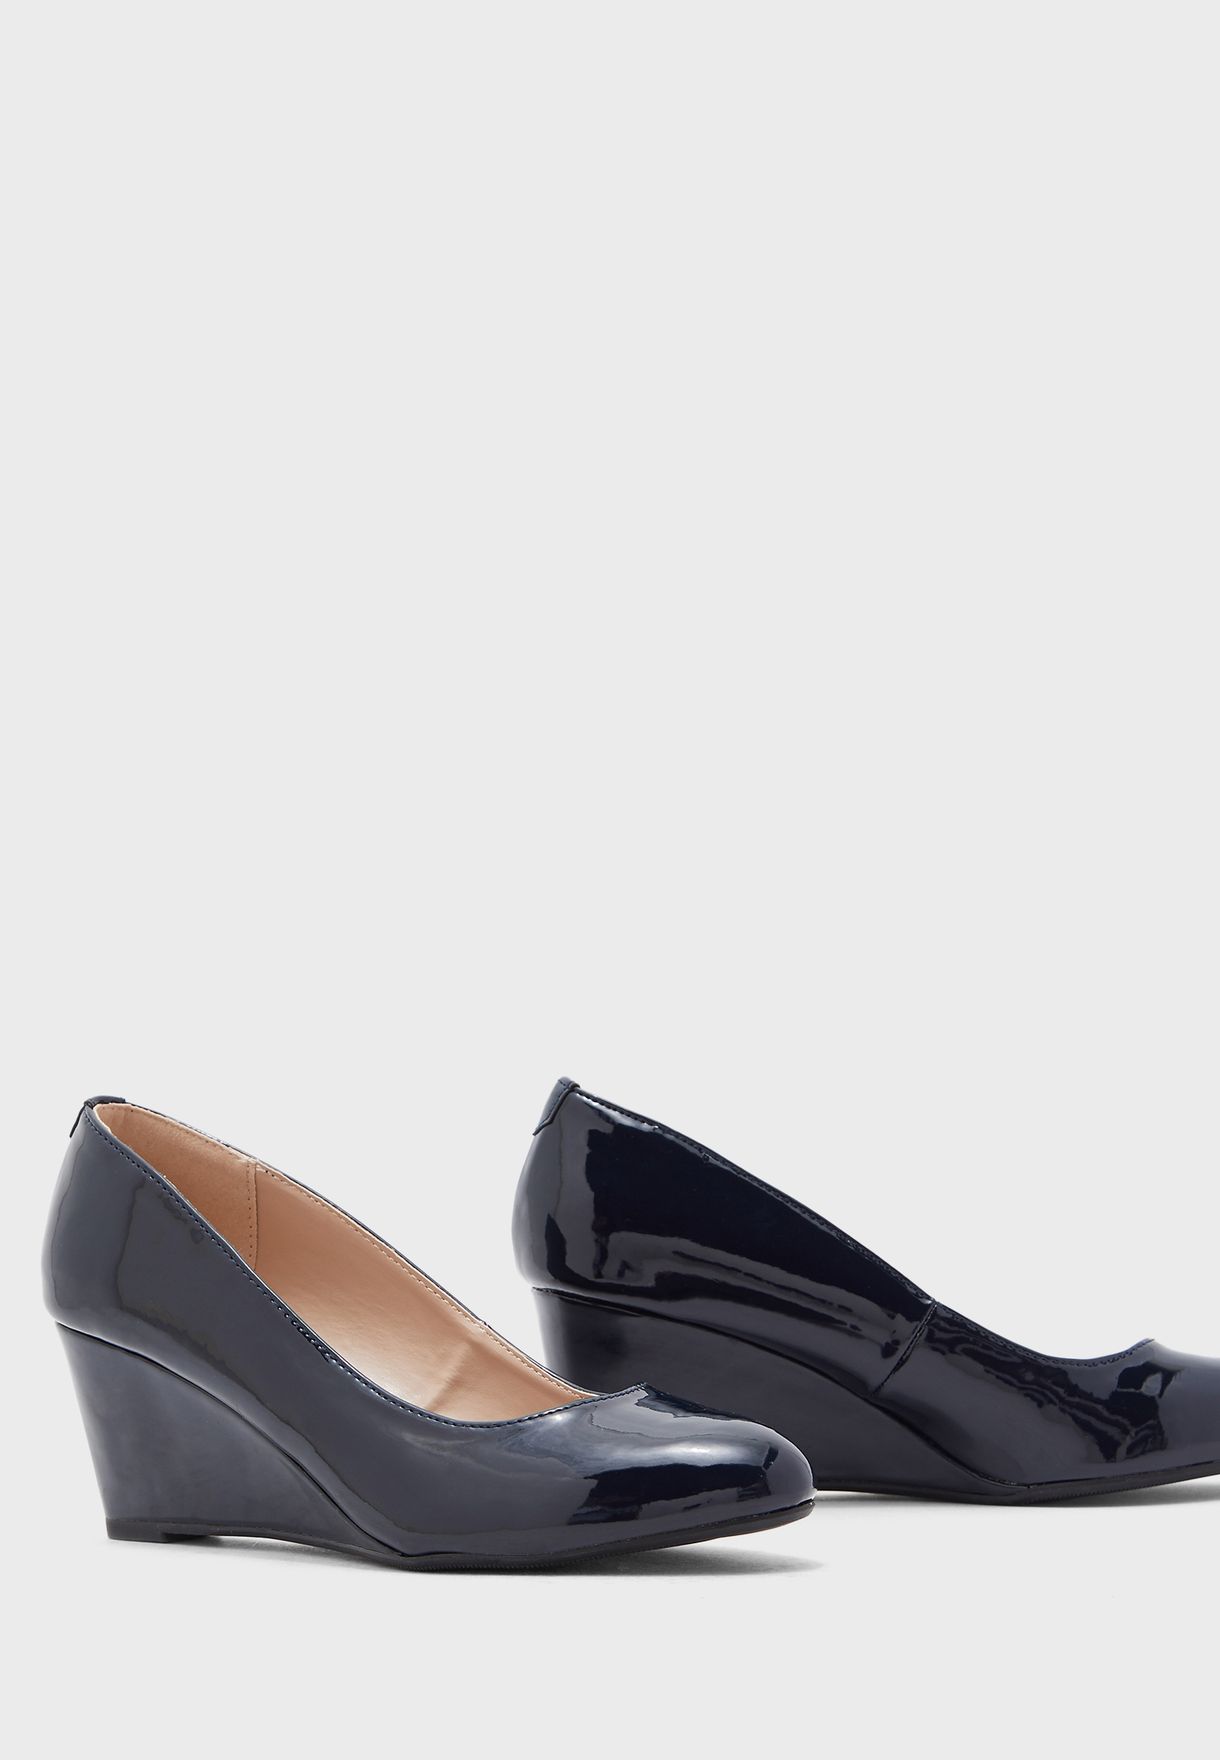 dorothy perkins navy heels